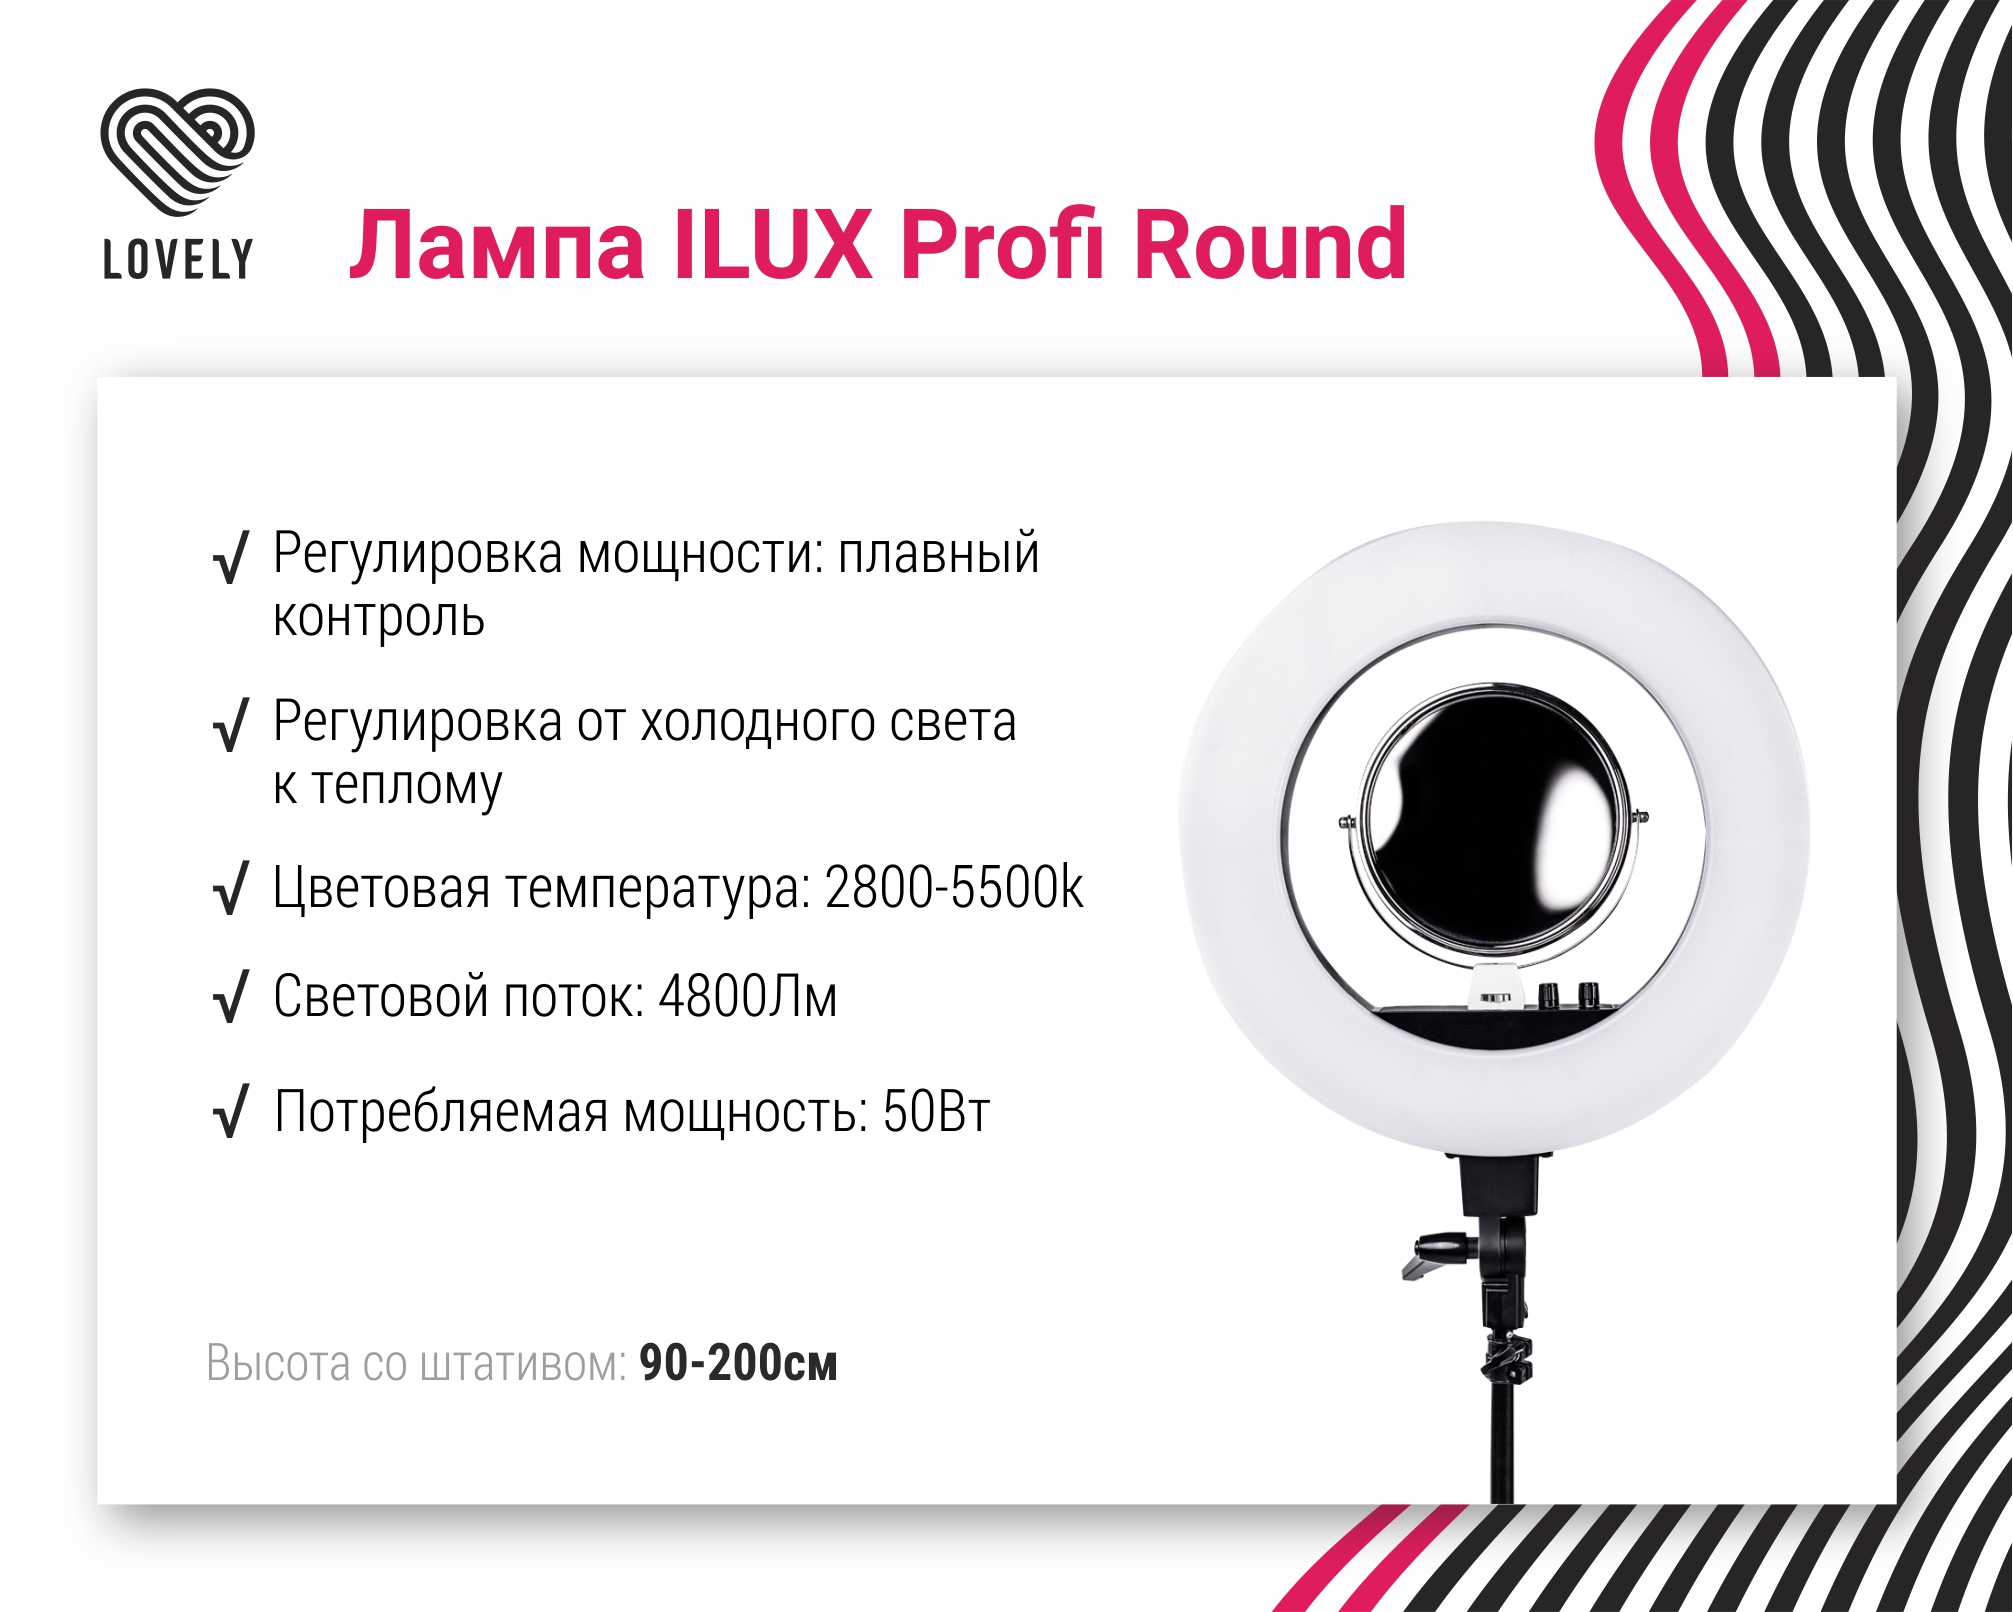 Профессиональная лампа Ilux Profi Round